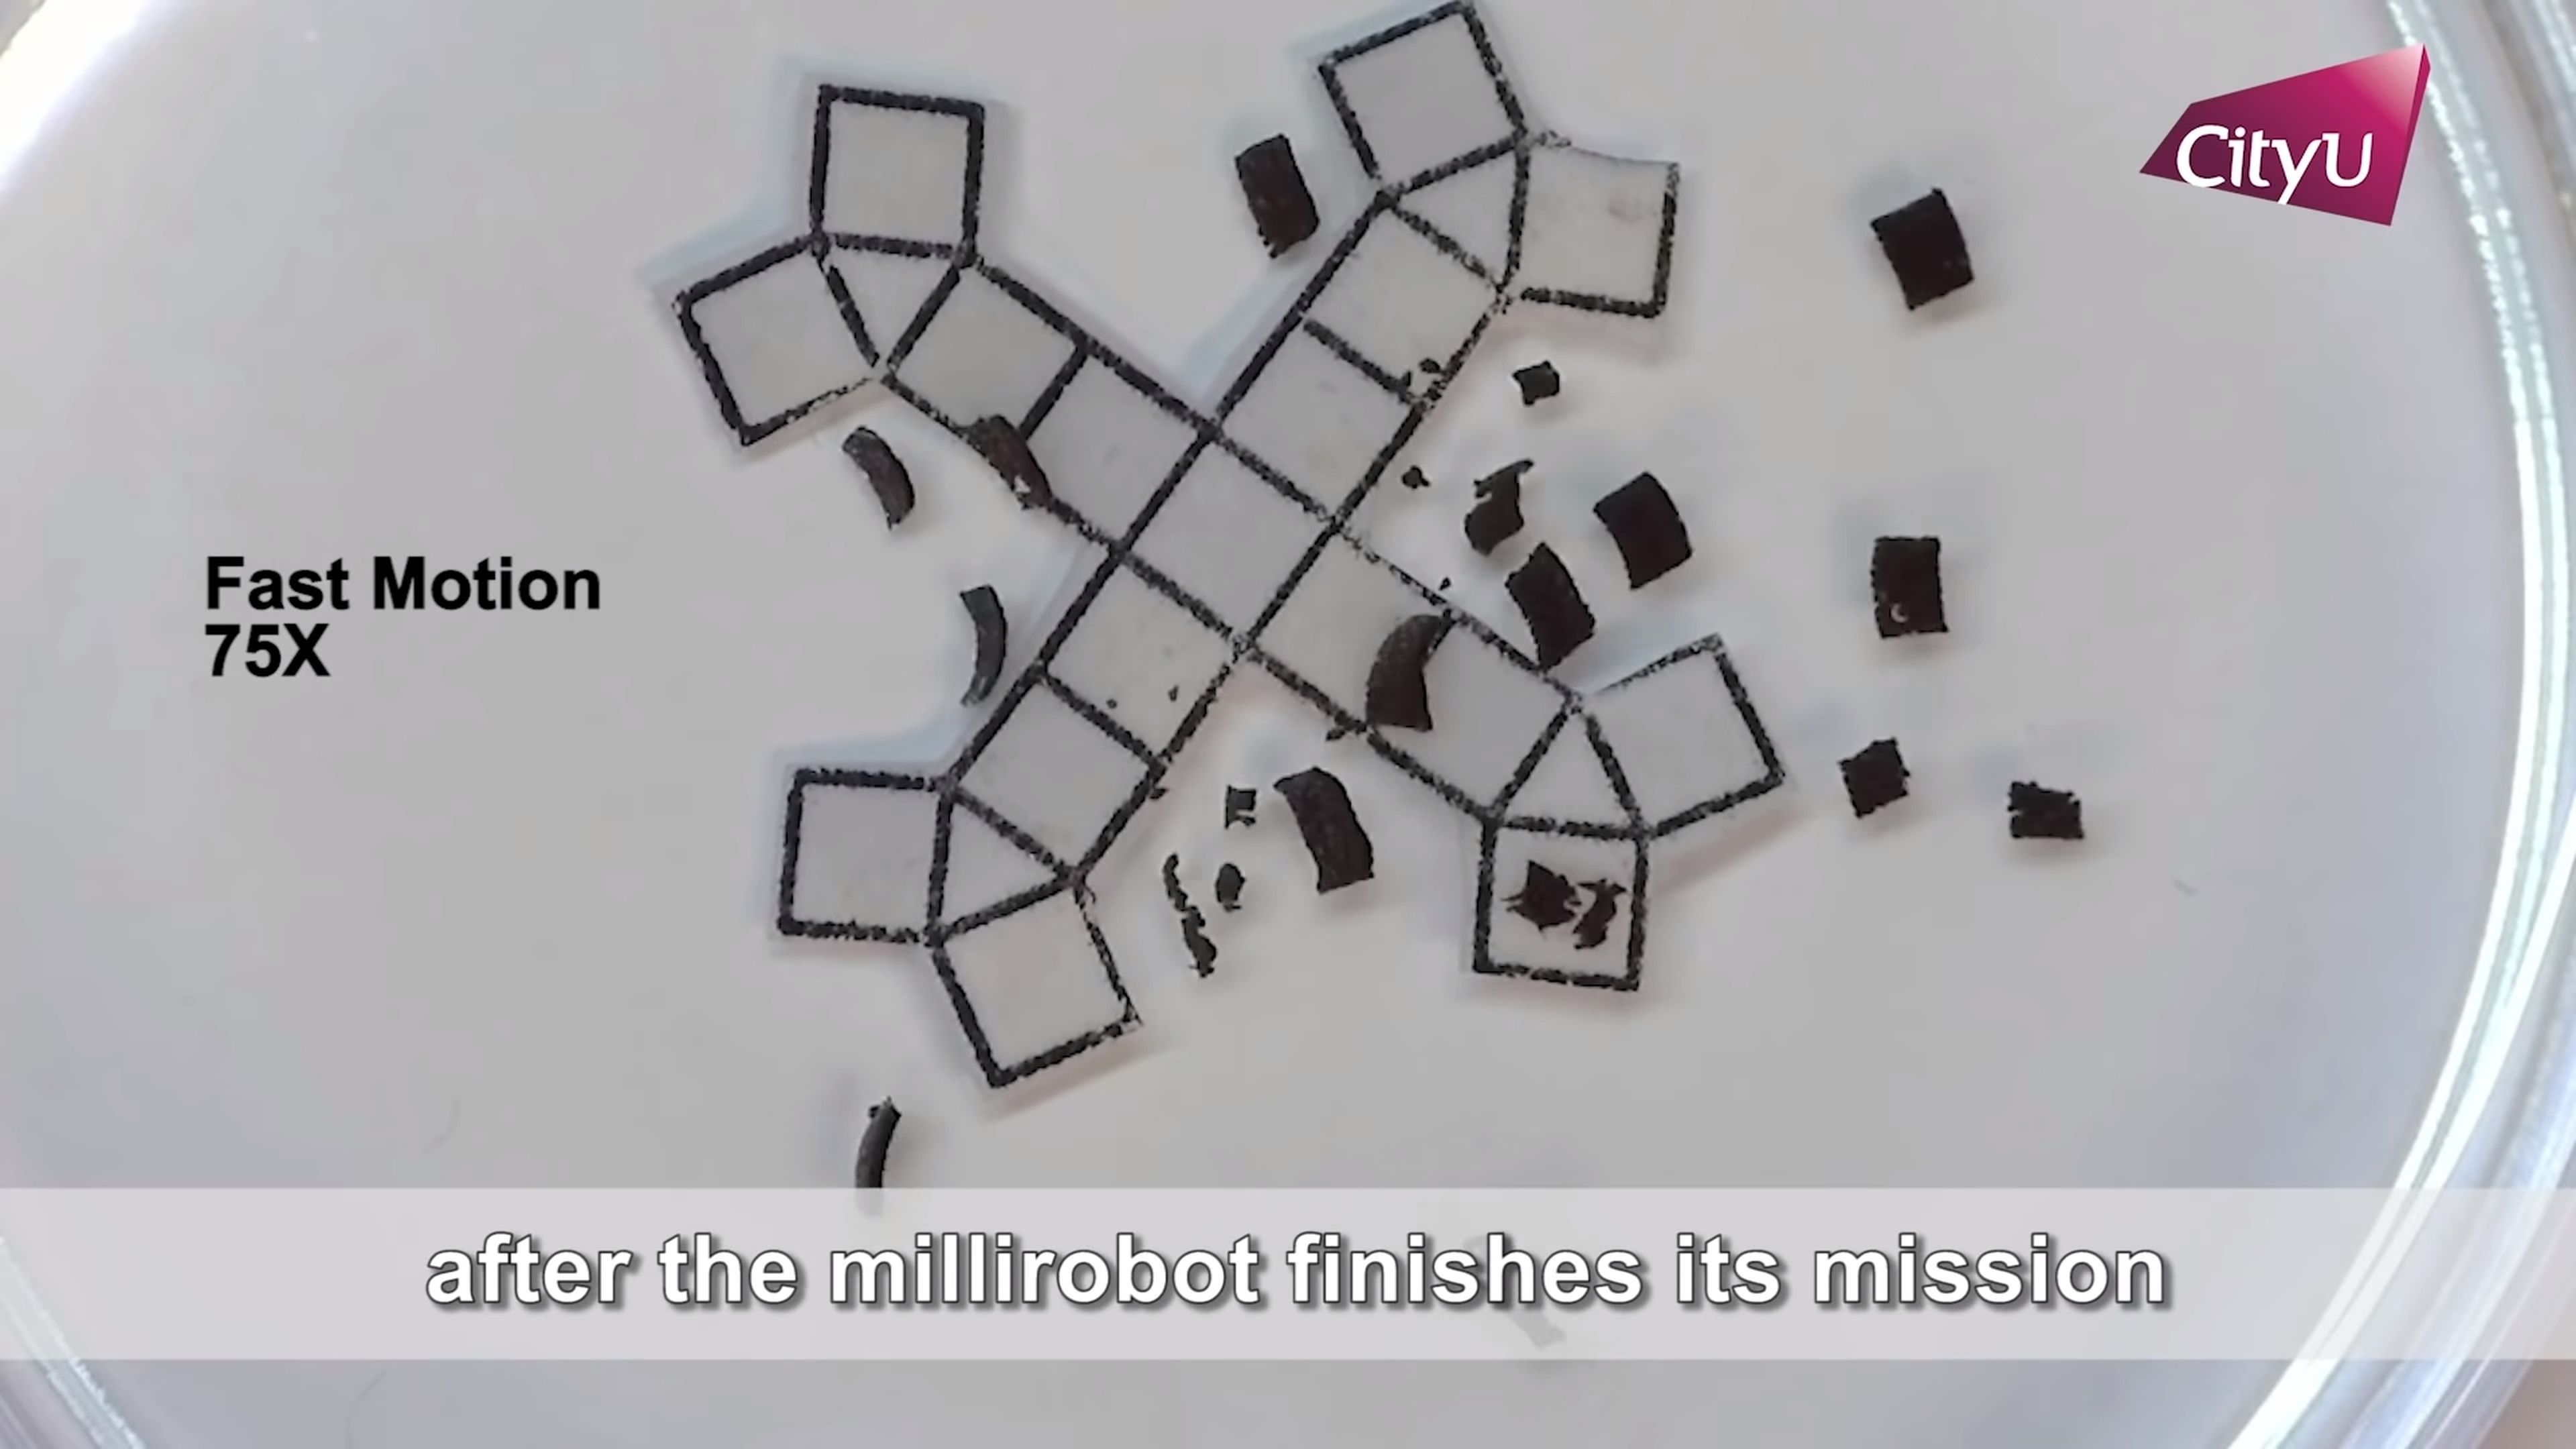 Un espray convierte pequeños objetos inanimados en robots que andan y saltan